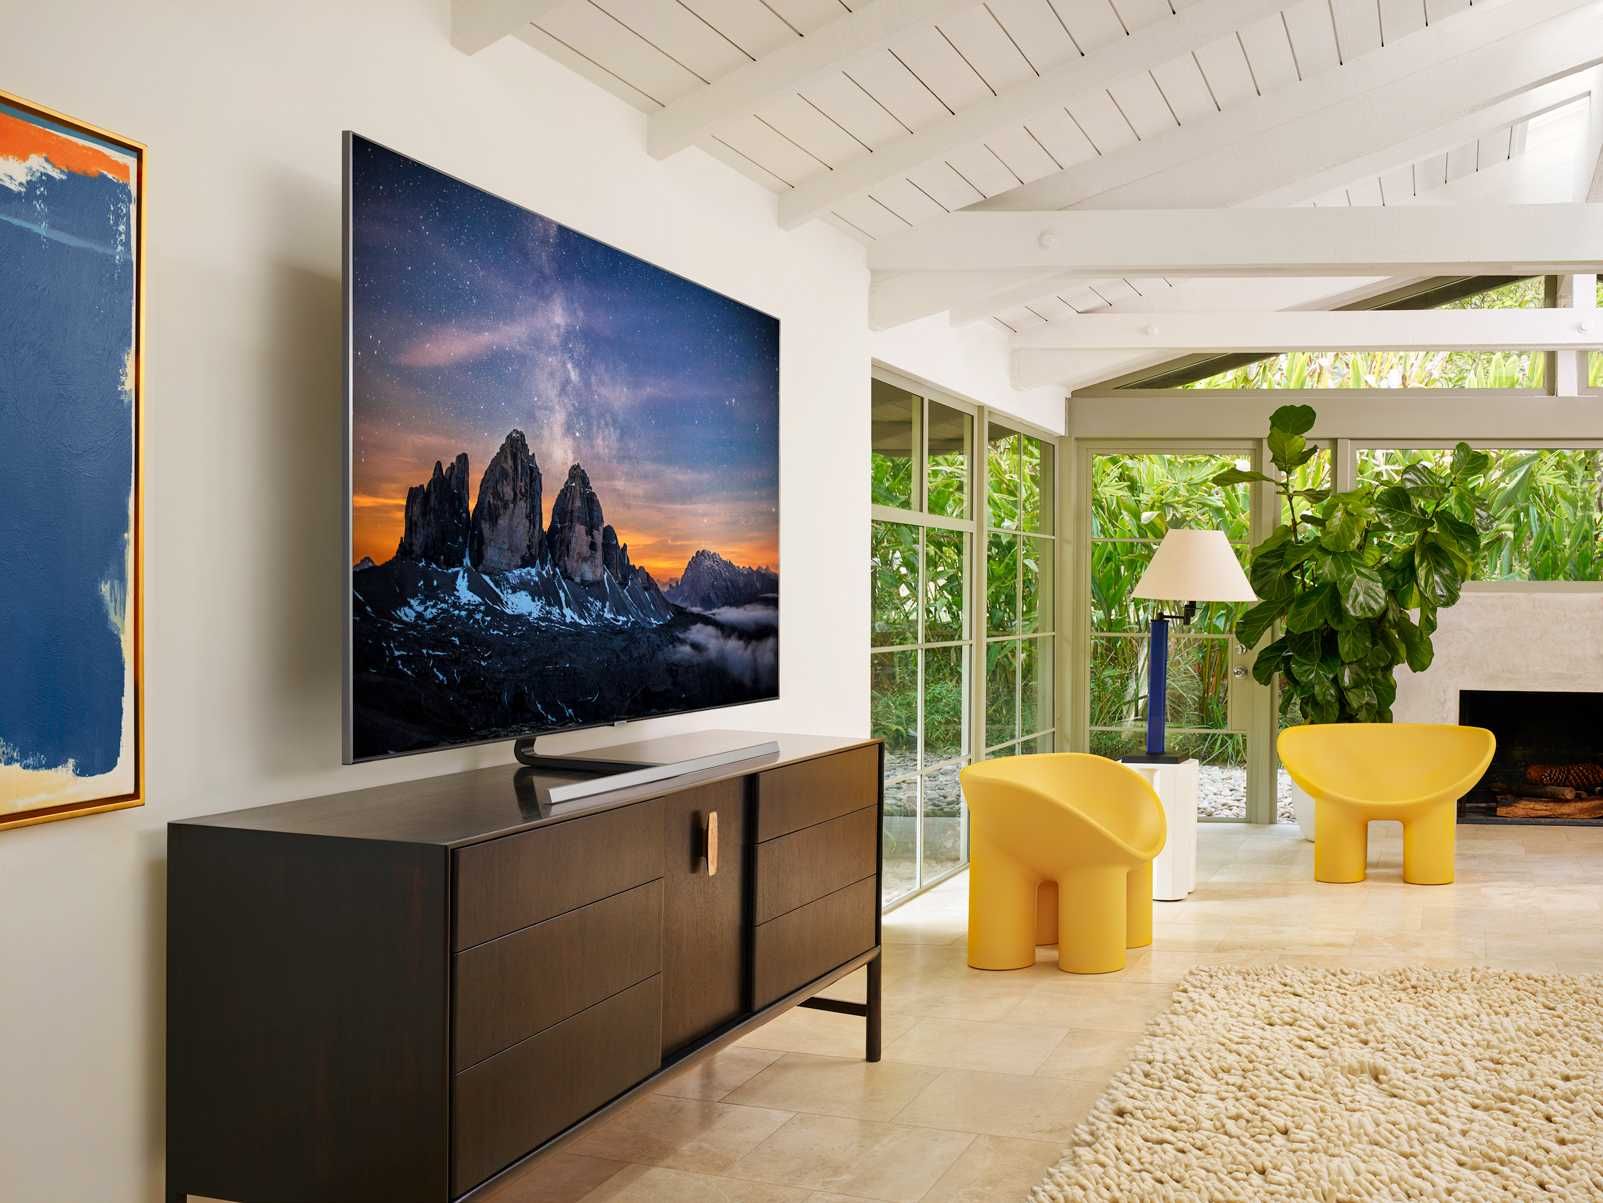 Телевизор TCL 43** Google TV 4k ultra + Бесплатный каналы в бонус